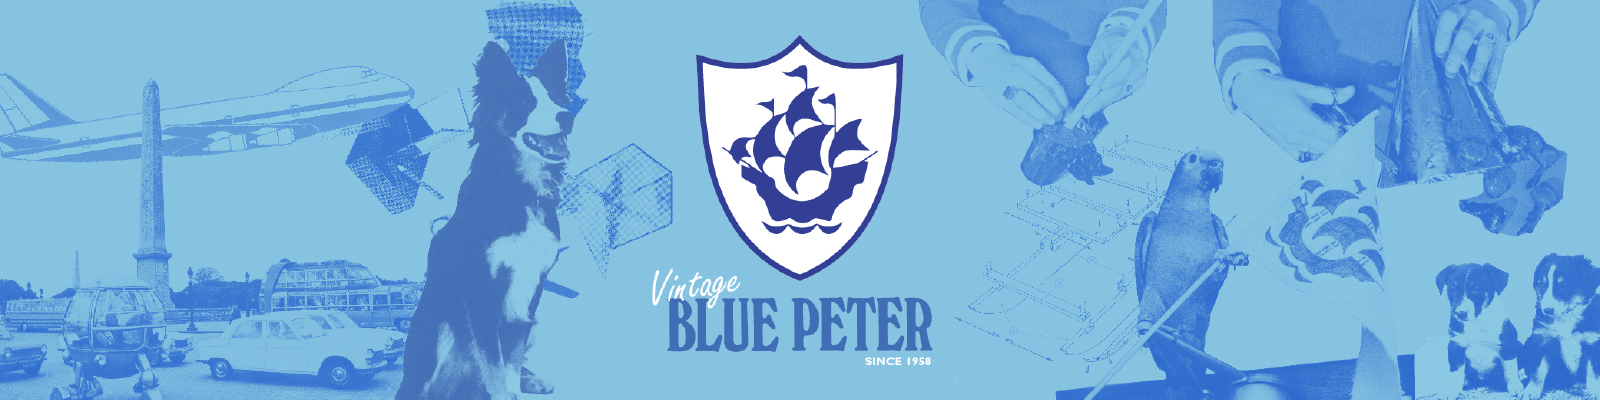 Blue Peter Vintage Logo